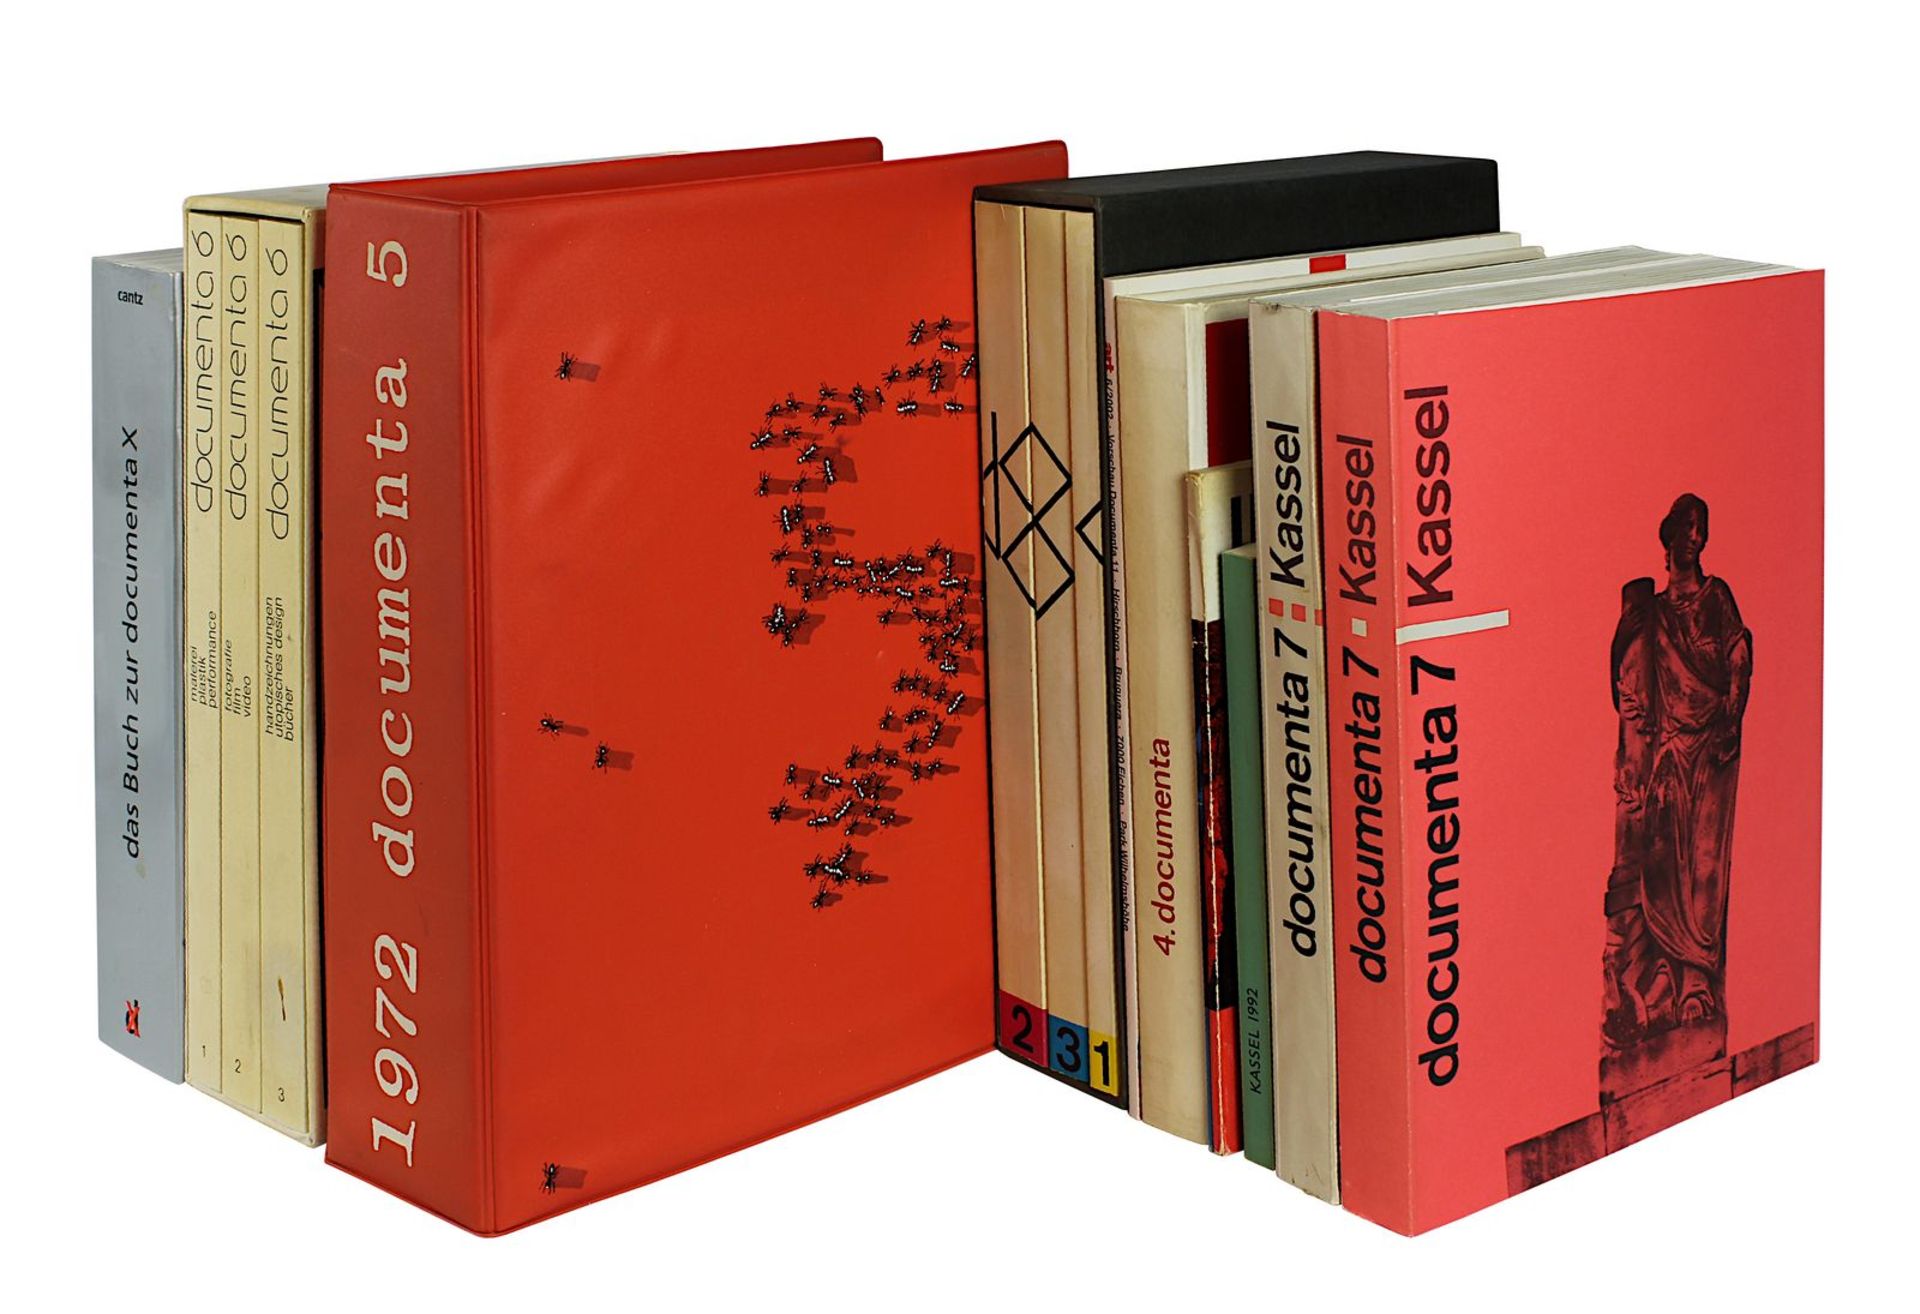 Großes Konvolut zu den Documenta Ausstellungen Kassel 1959 - 2002: Documenta II, Katalog, Kunst nach